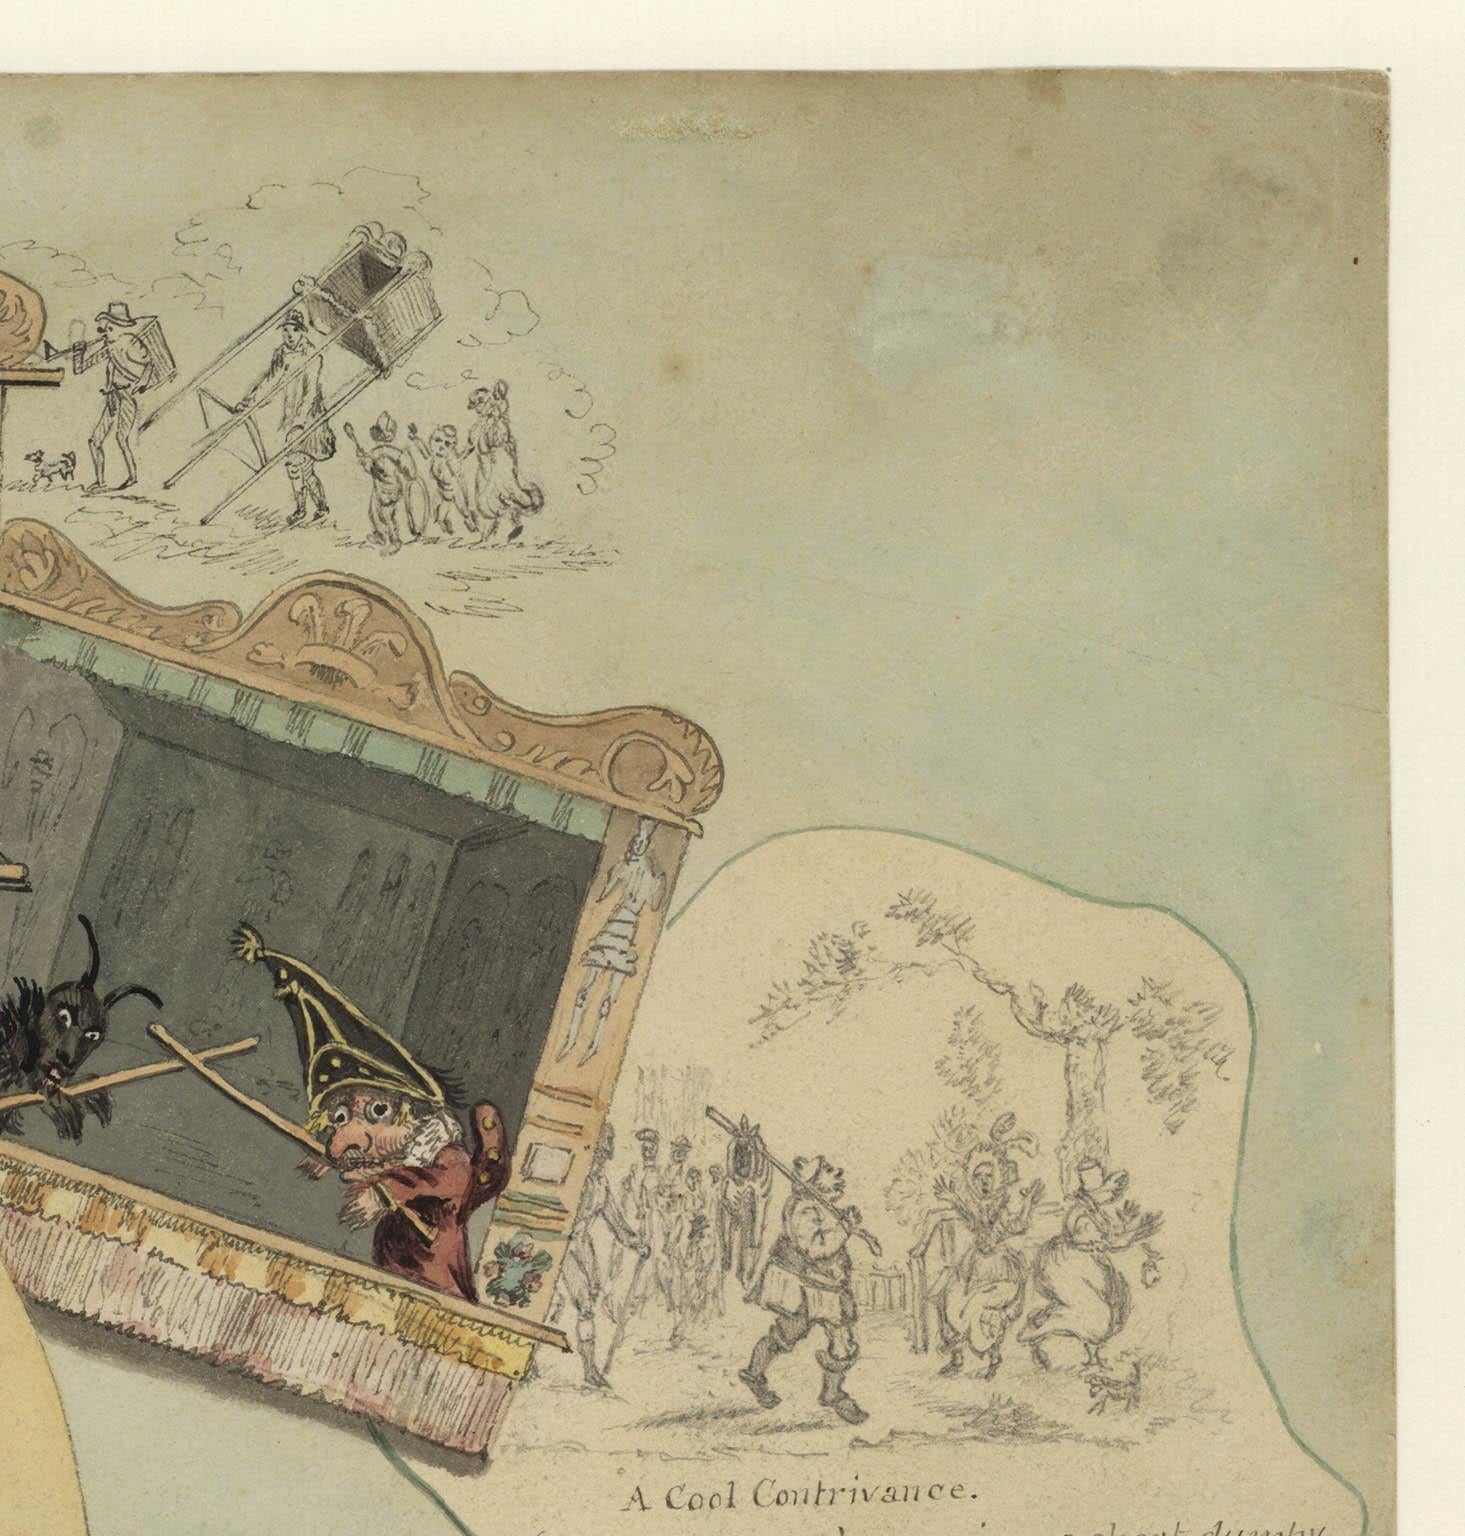 Trompe l'oeil.  [Kasperltheater].
Aquarell und Zeichnung, undatiert, um 1830.  Papierformat 10,25 x 14